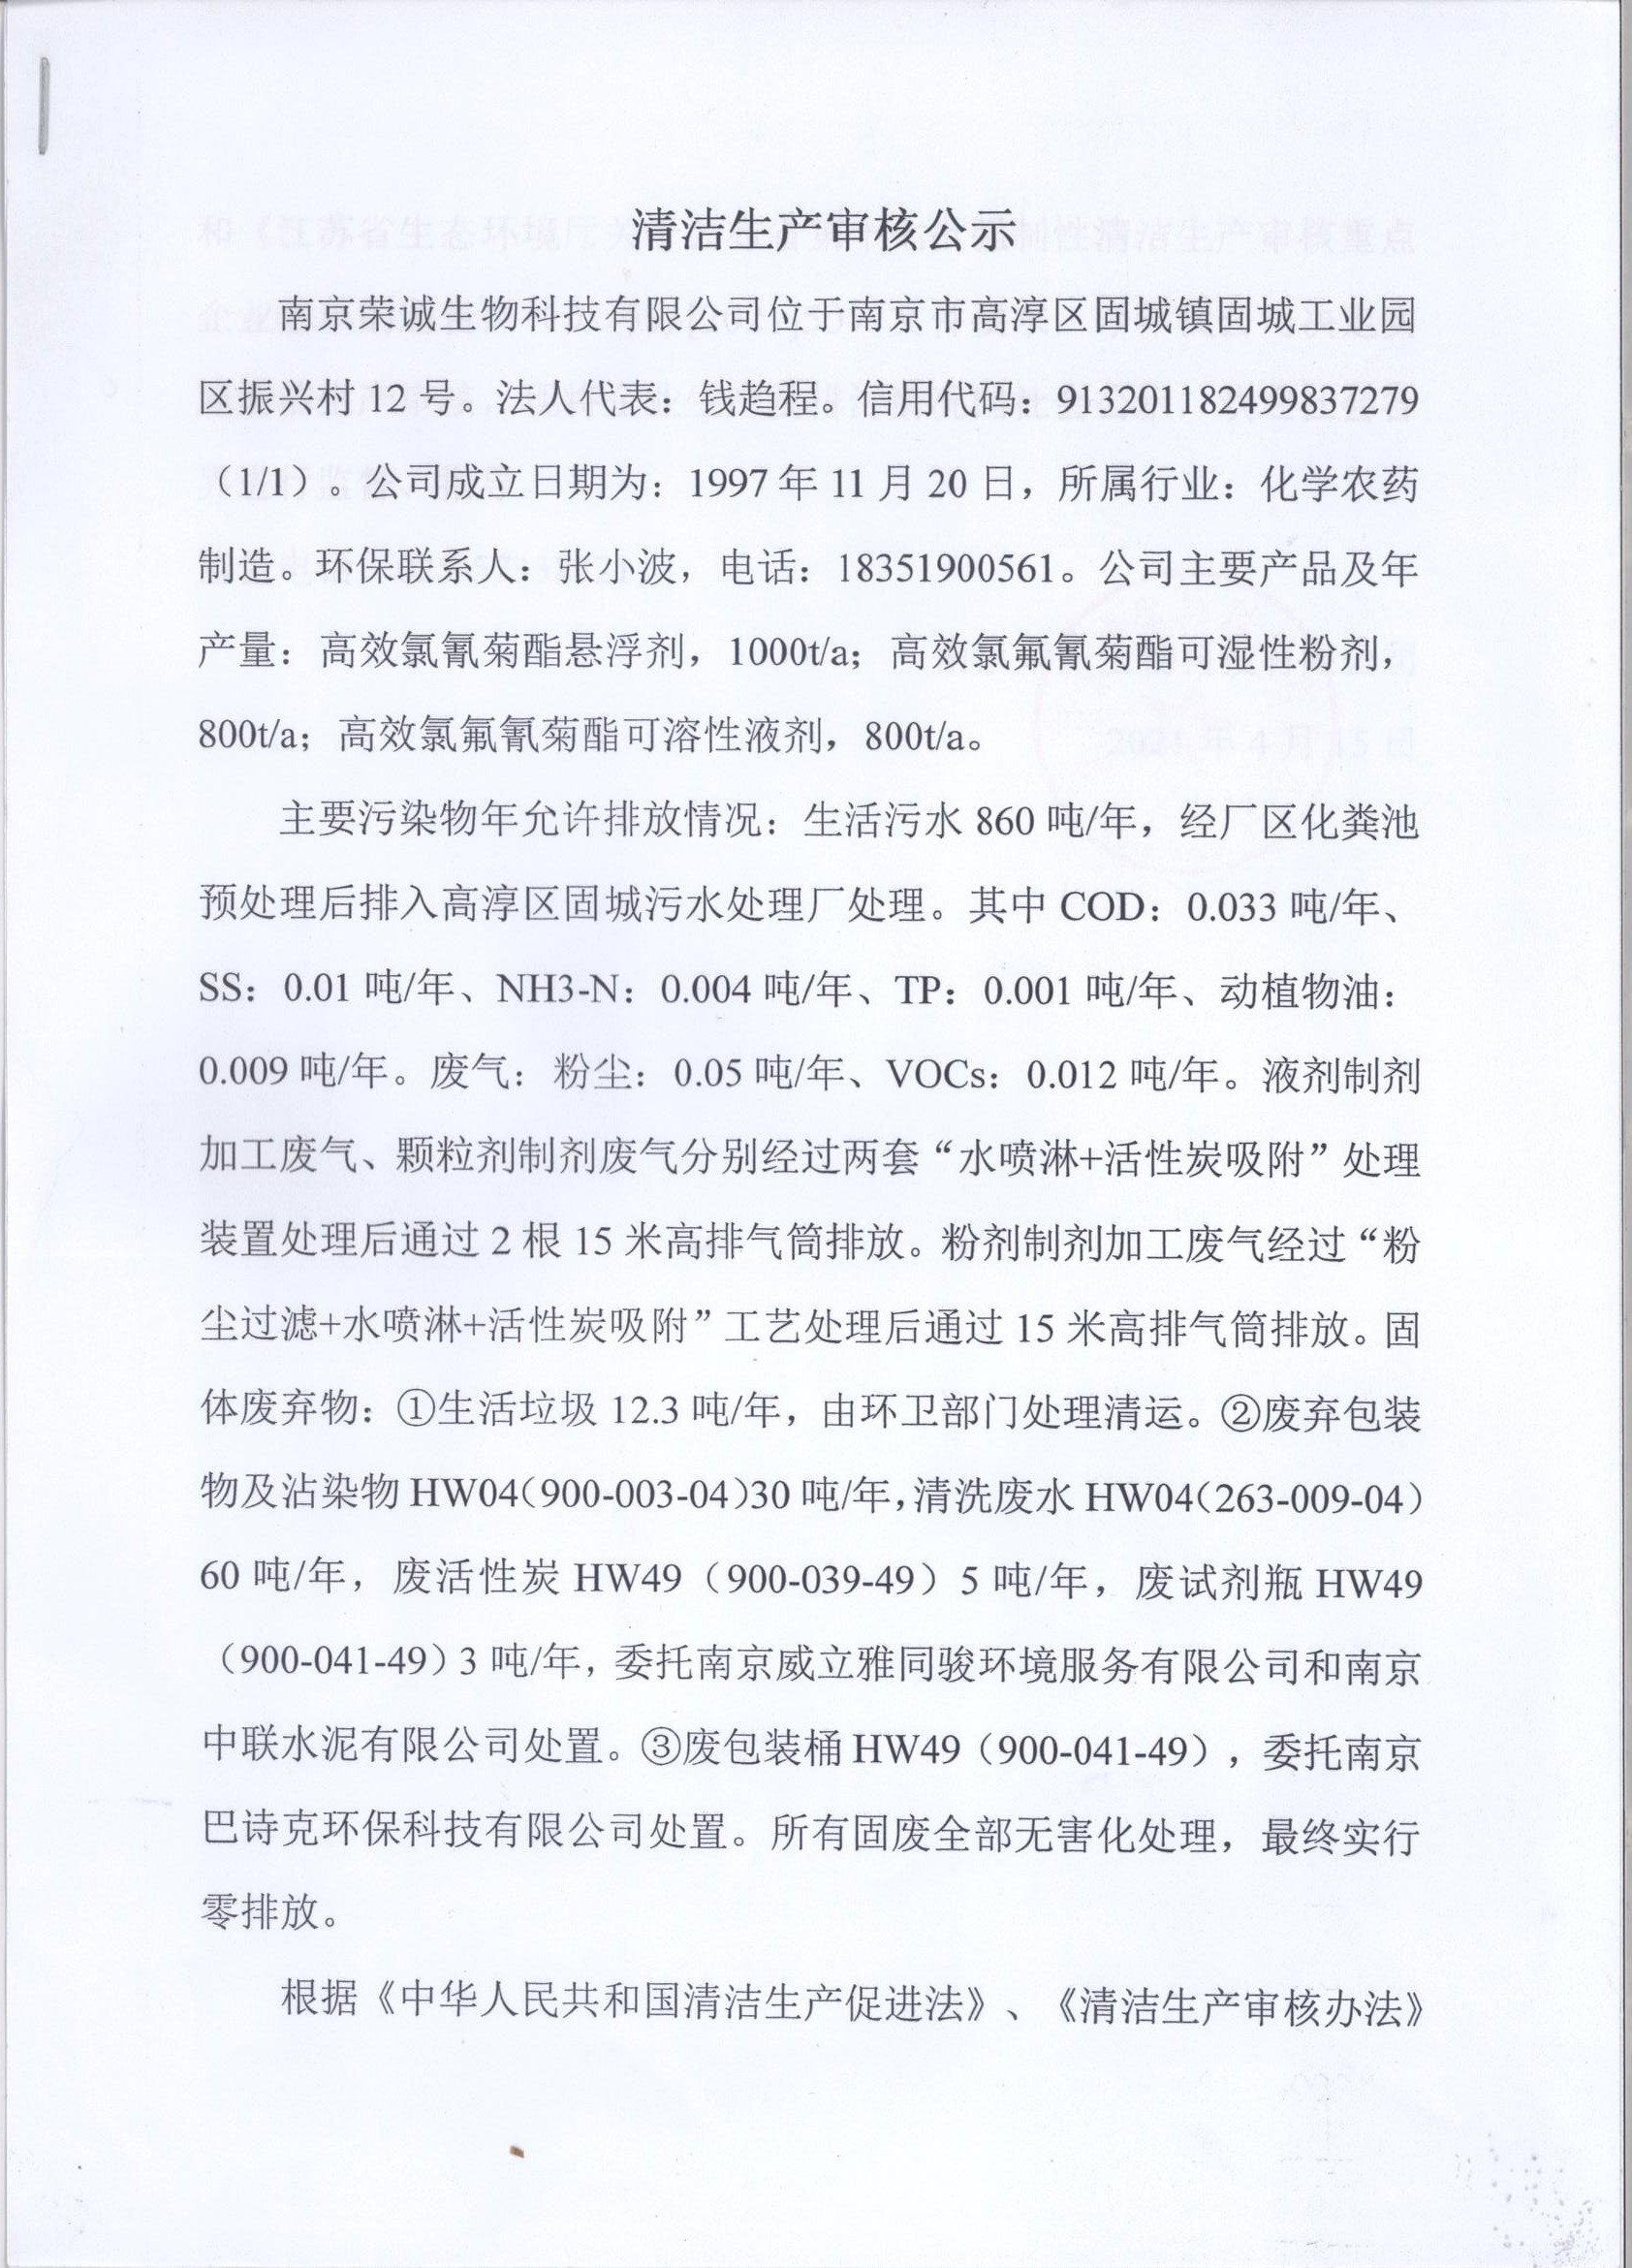 关于南京荣诚生物科技有限公司清洁生产审核公示